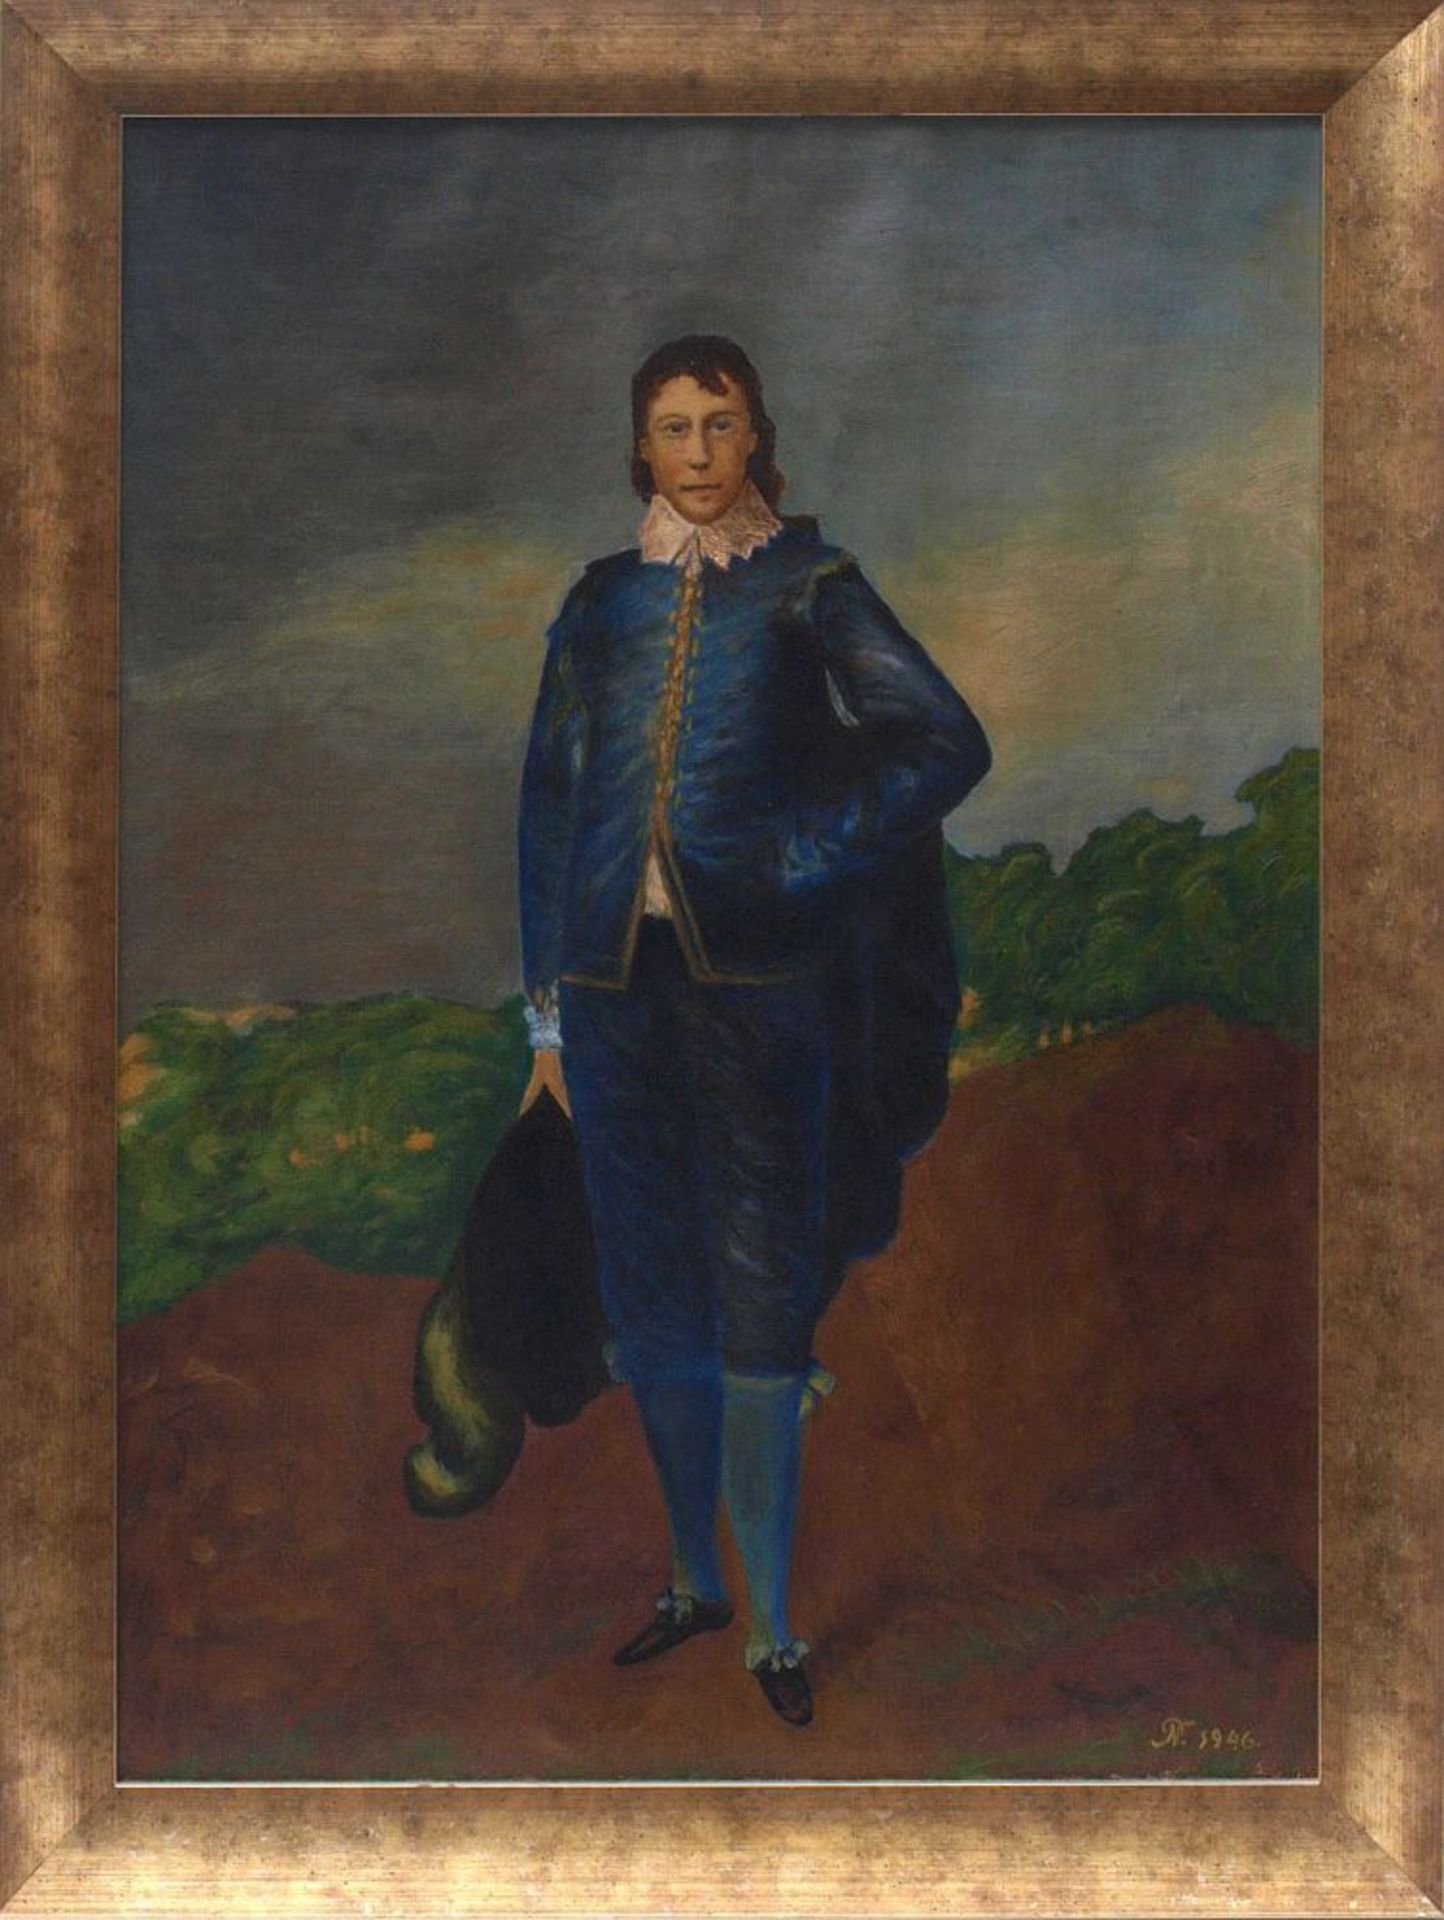 Gainsborough, Thomas (Kopie nach) Kopie nach dem Gemälde "The blue boy". Öl/Lwd., rechts unten